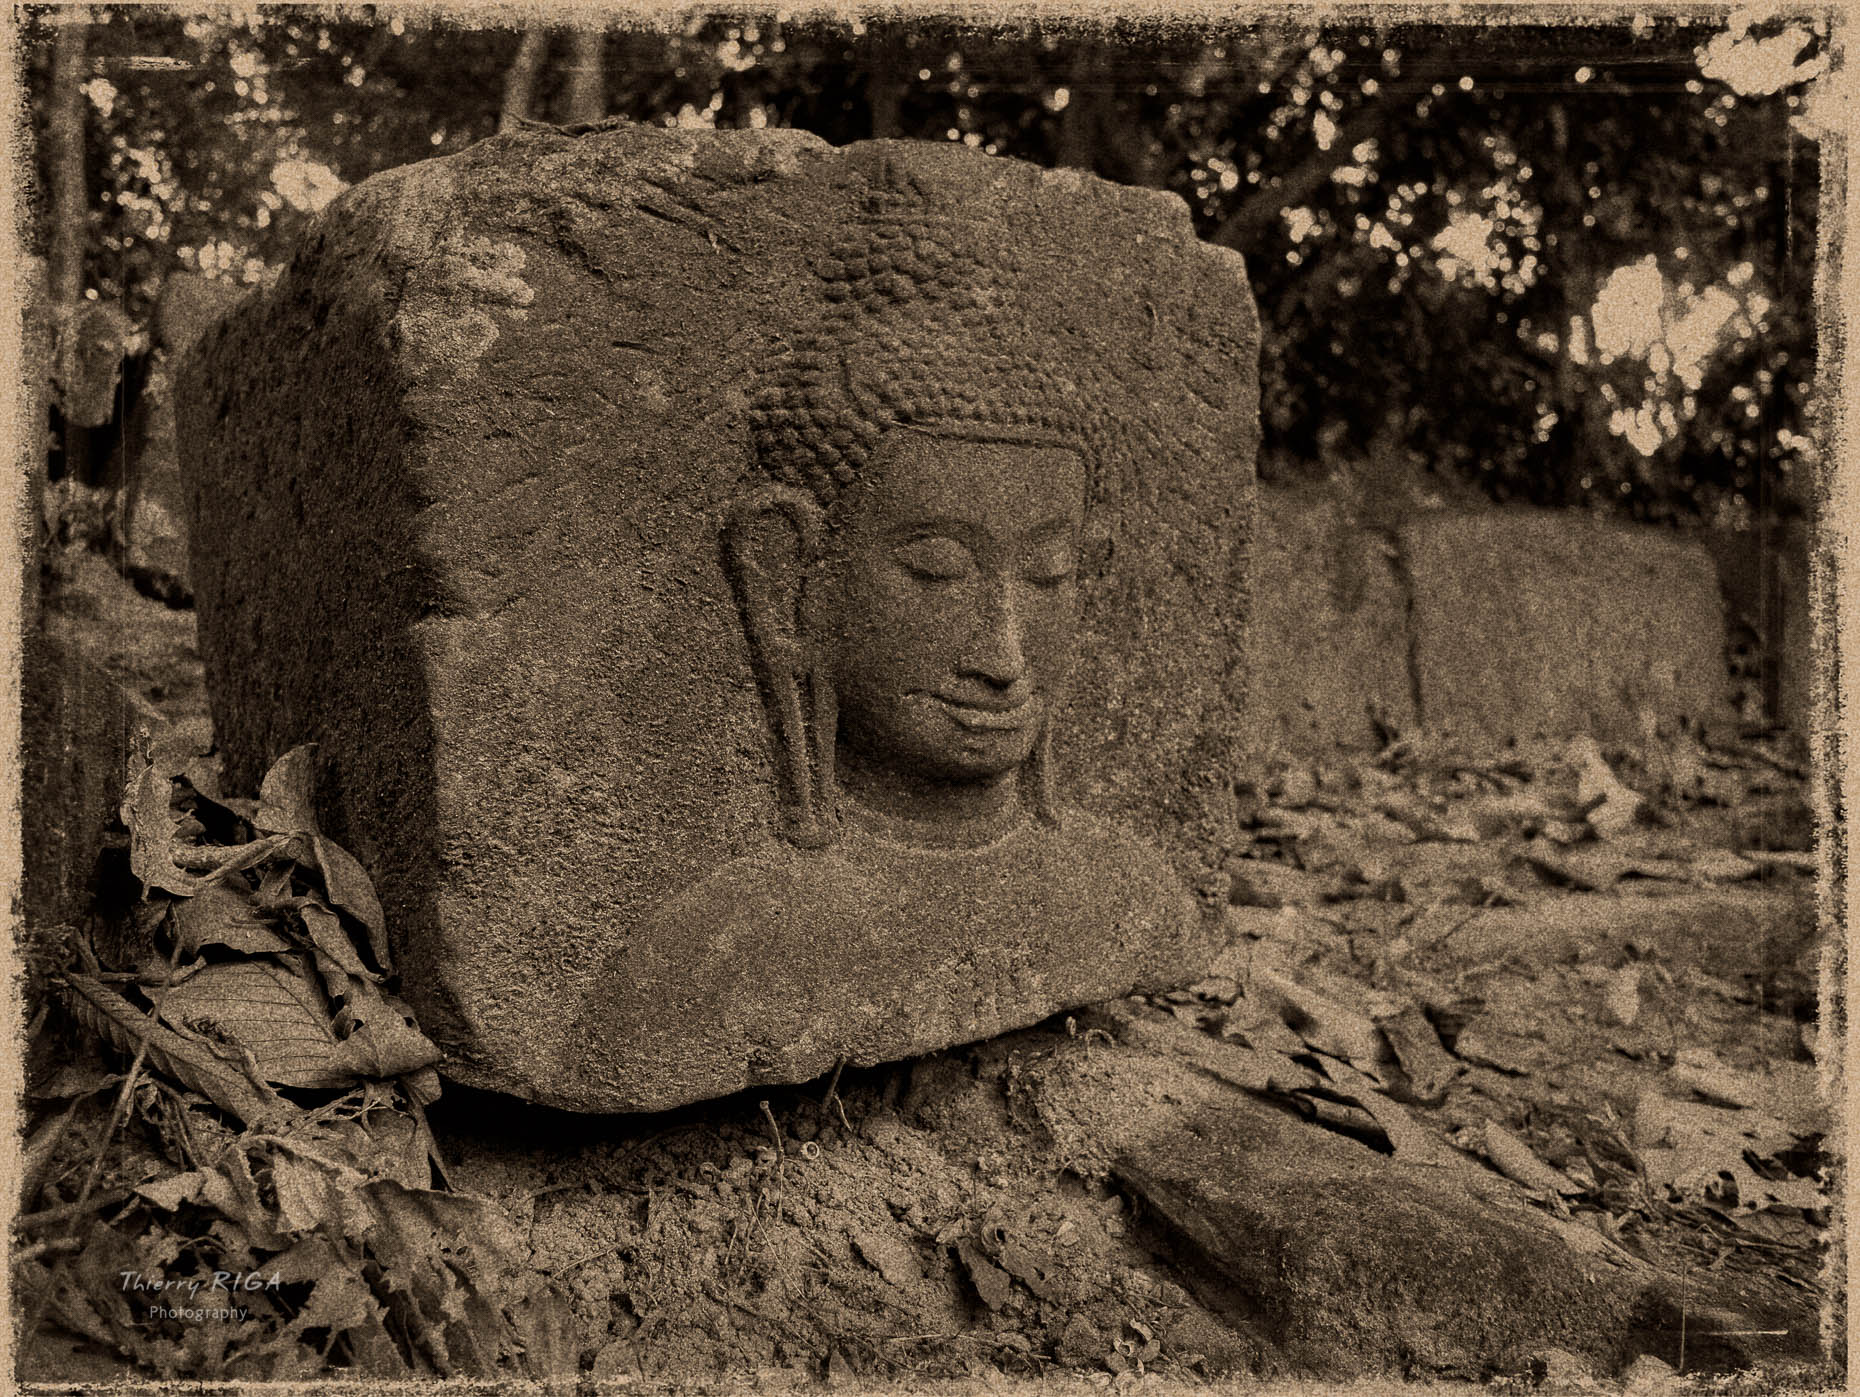 BuddhacarvingdetailAngkorTemple-_1250959-Edit